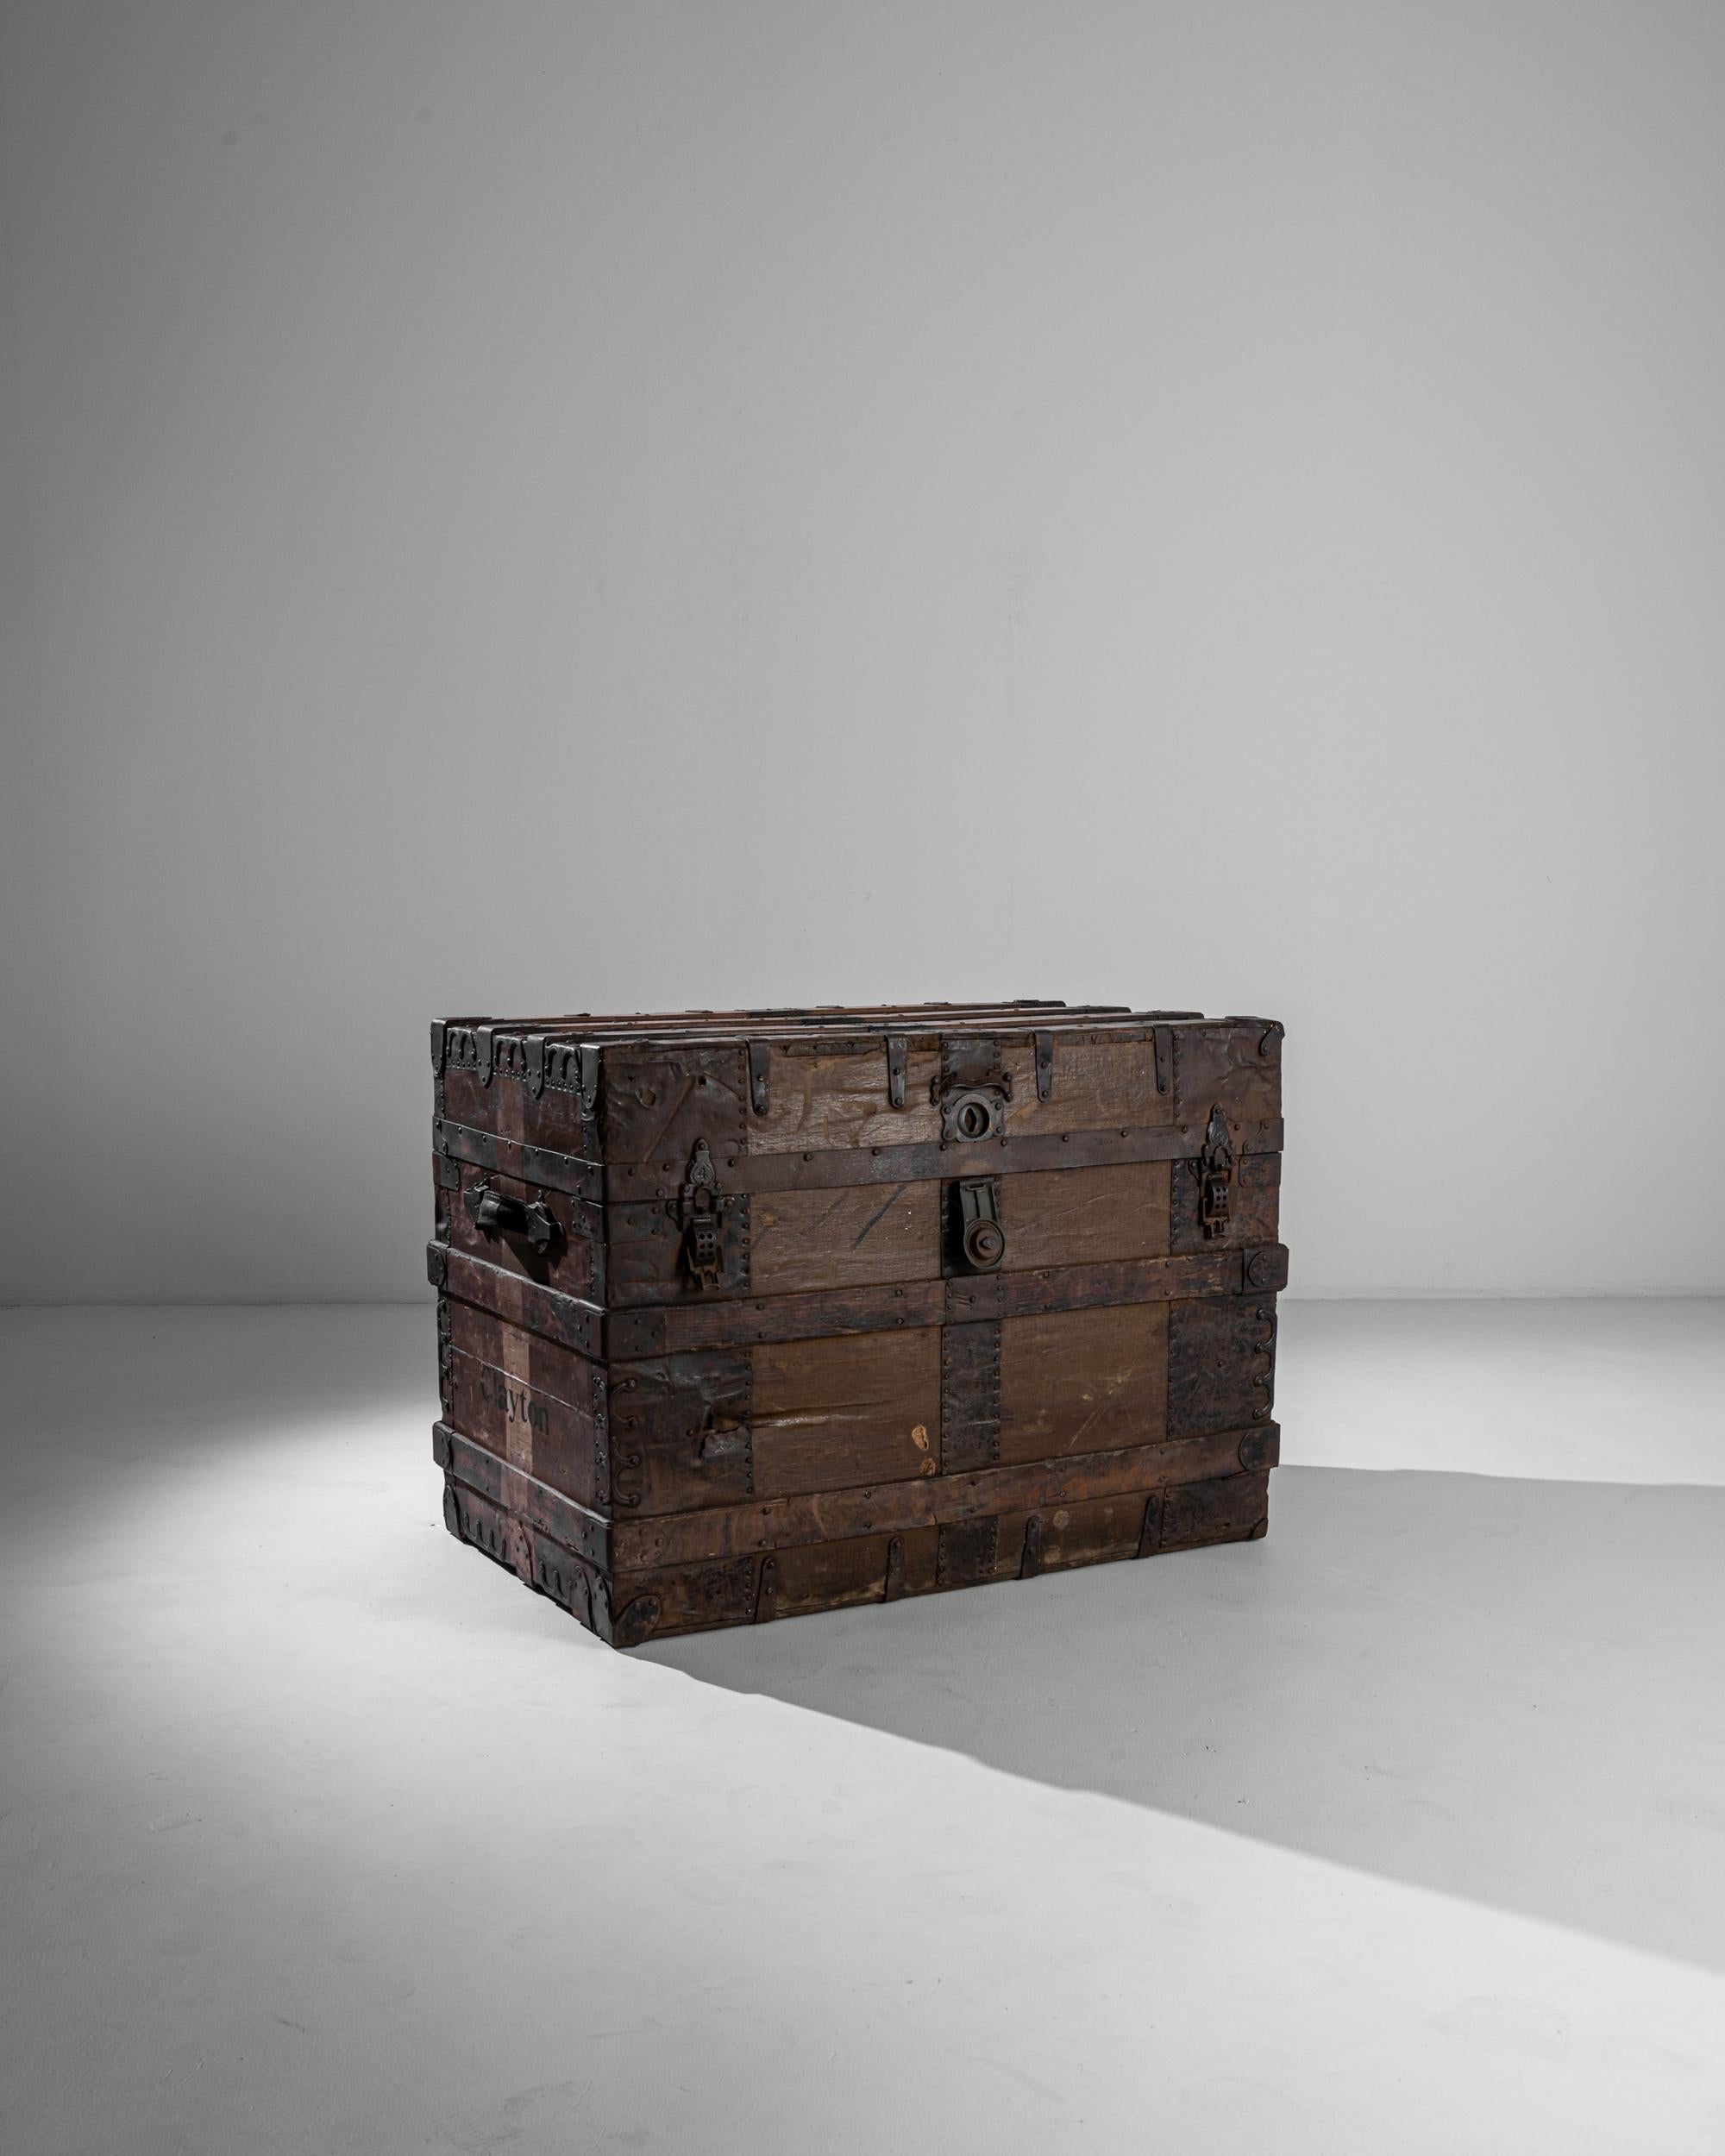 Ce robuste coffre en bois a été fabriqué au Royaume-Uni vers 1900. Le coffre est renforcé par des feuilles de fer, les côtés et les ceintures par des lattes de bois pour une durabilité accrue. Des éléments en fer ornemental - boulons de traction,